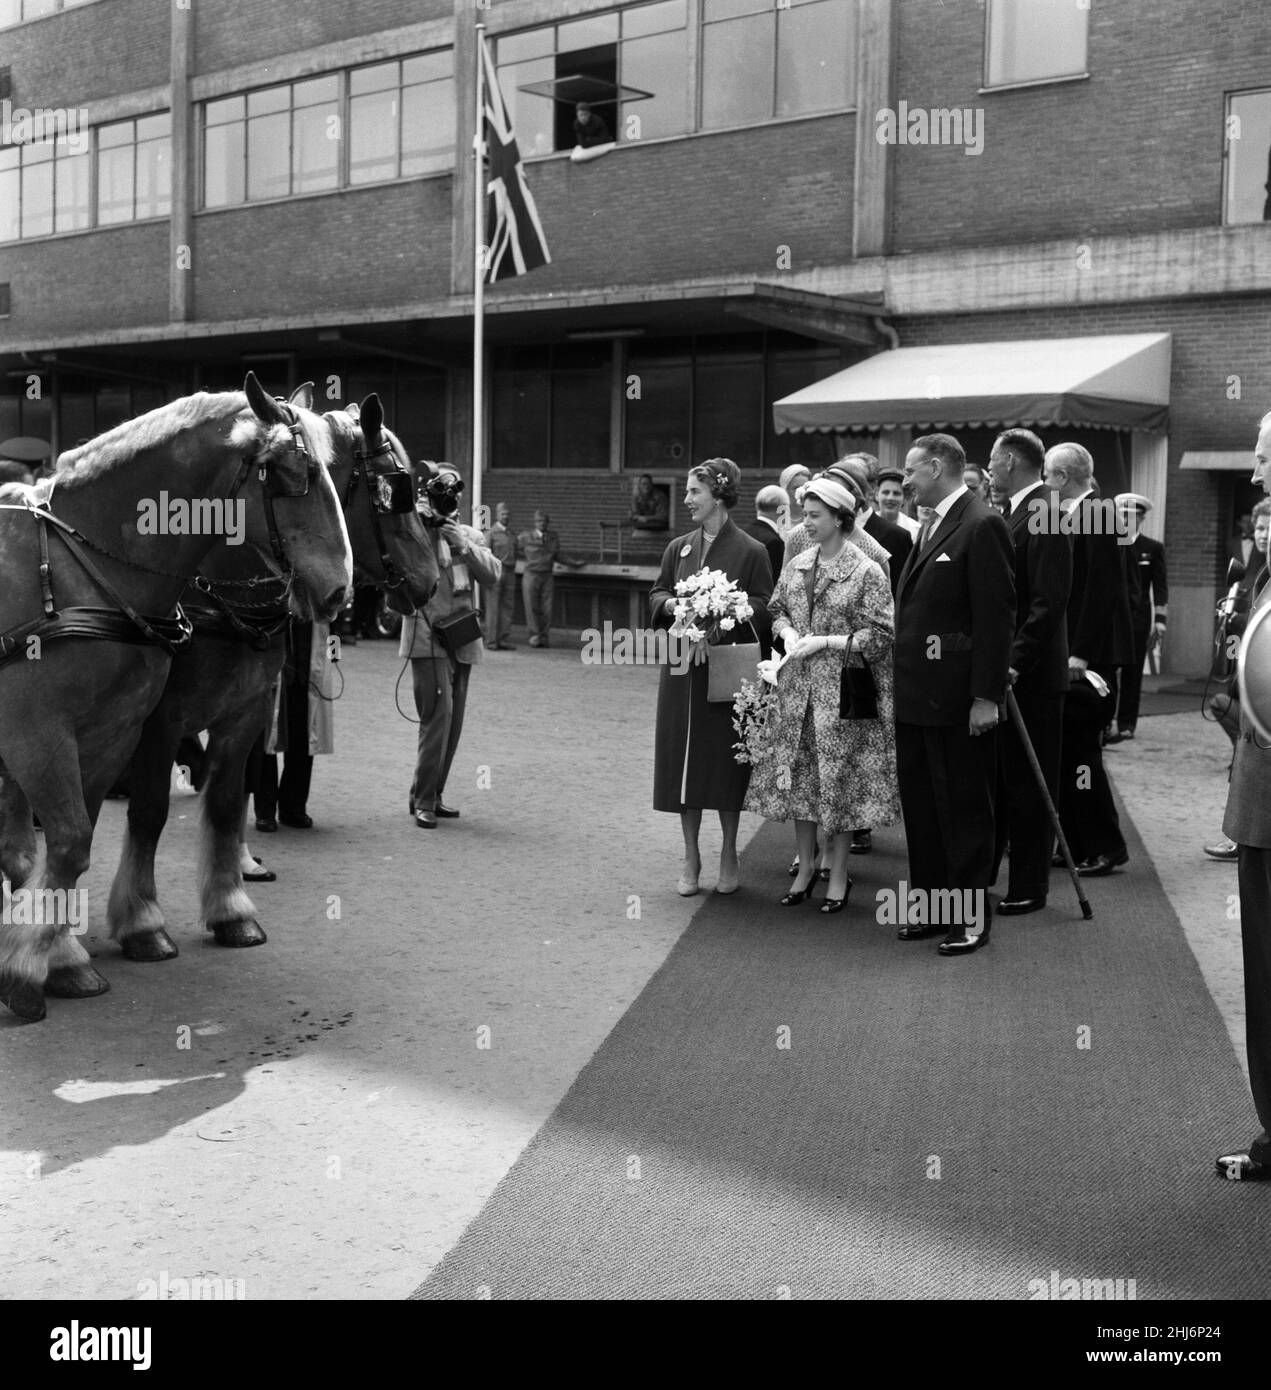 Königin Elizabeth II. Und Prinz Philip, Herzog von Edinburgh, besuchen Dänemark. Königin Ingrid von Dänemark und Königin Elizabeth betrachten die prächtigen Pferde der Carlsberg-Brauerei. 22nd Mai 1957. Stockfoto